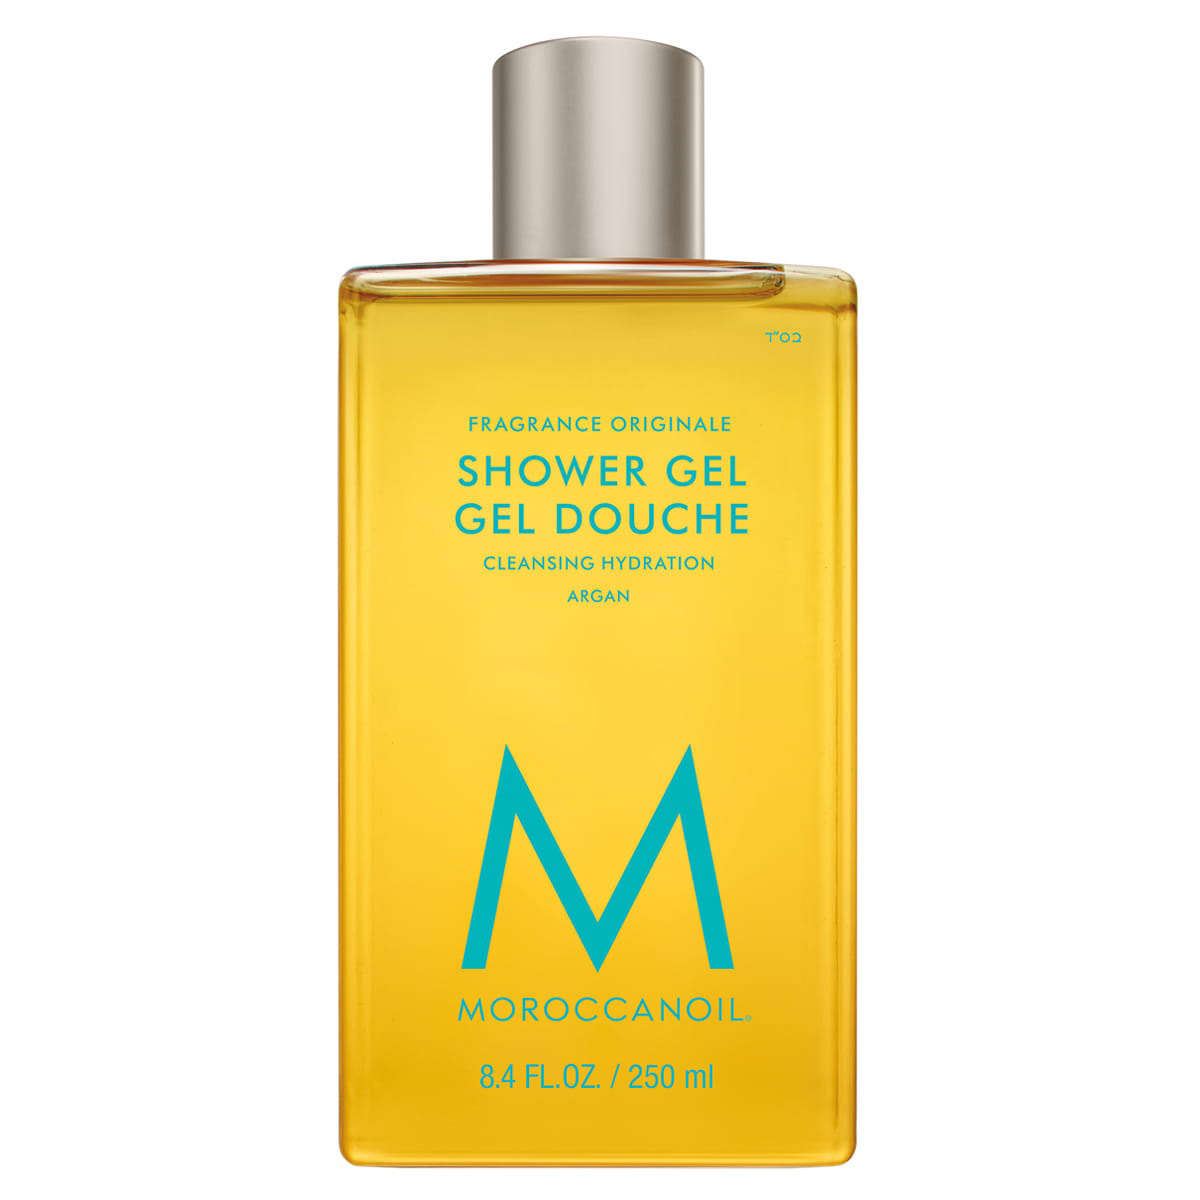 Moroccanoil, nawilżający żel pod prysznic, zapach oryginalny, 250ml